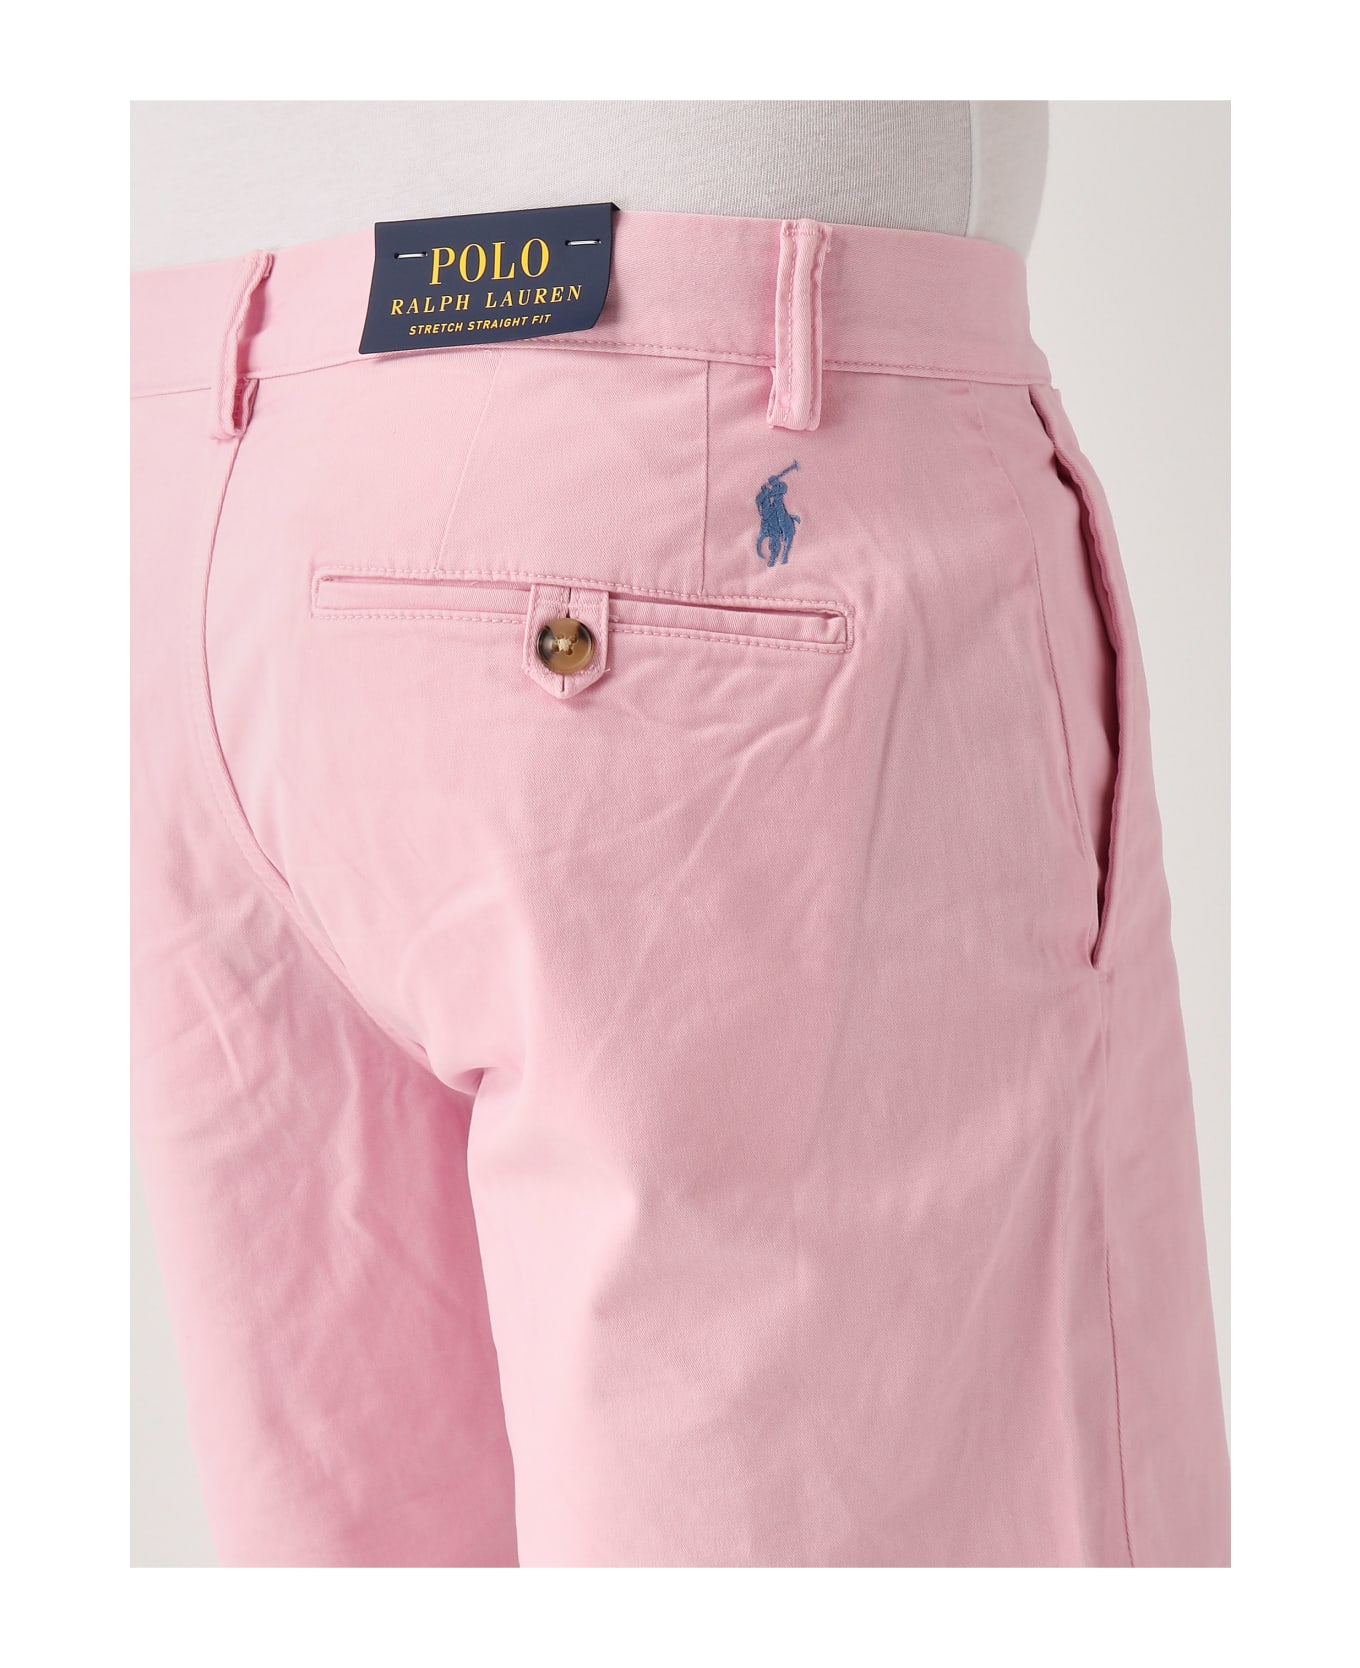 Polo Ralph Lauren Flat Short Shorts - ROSA